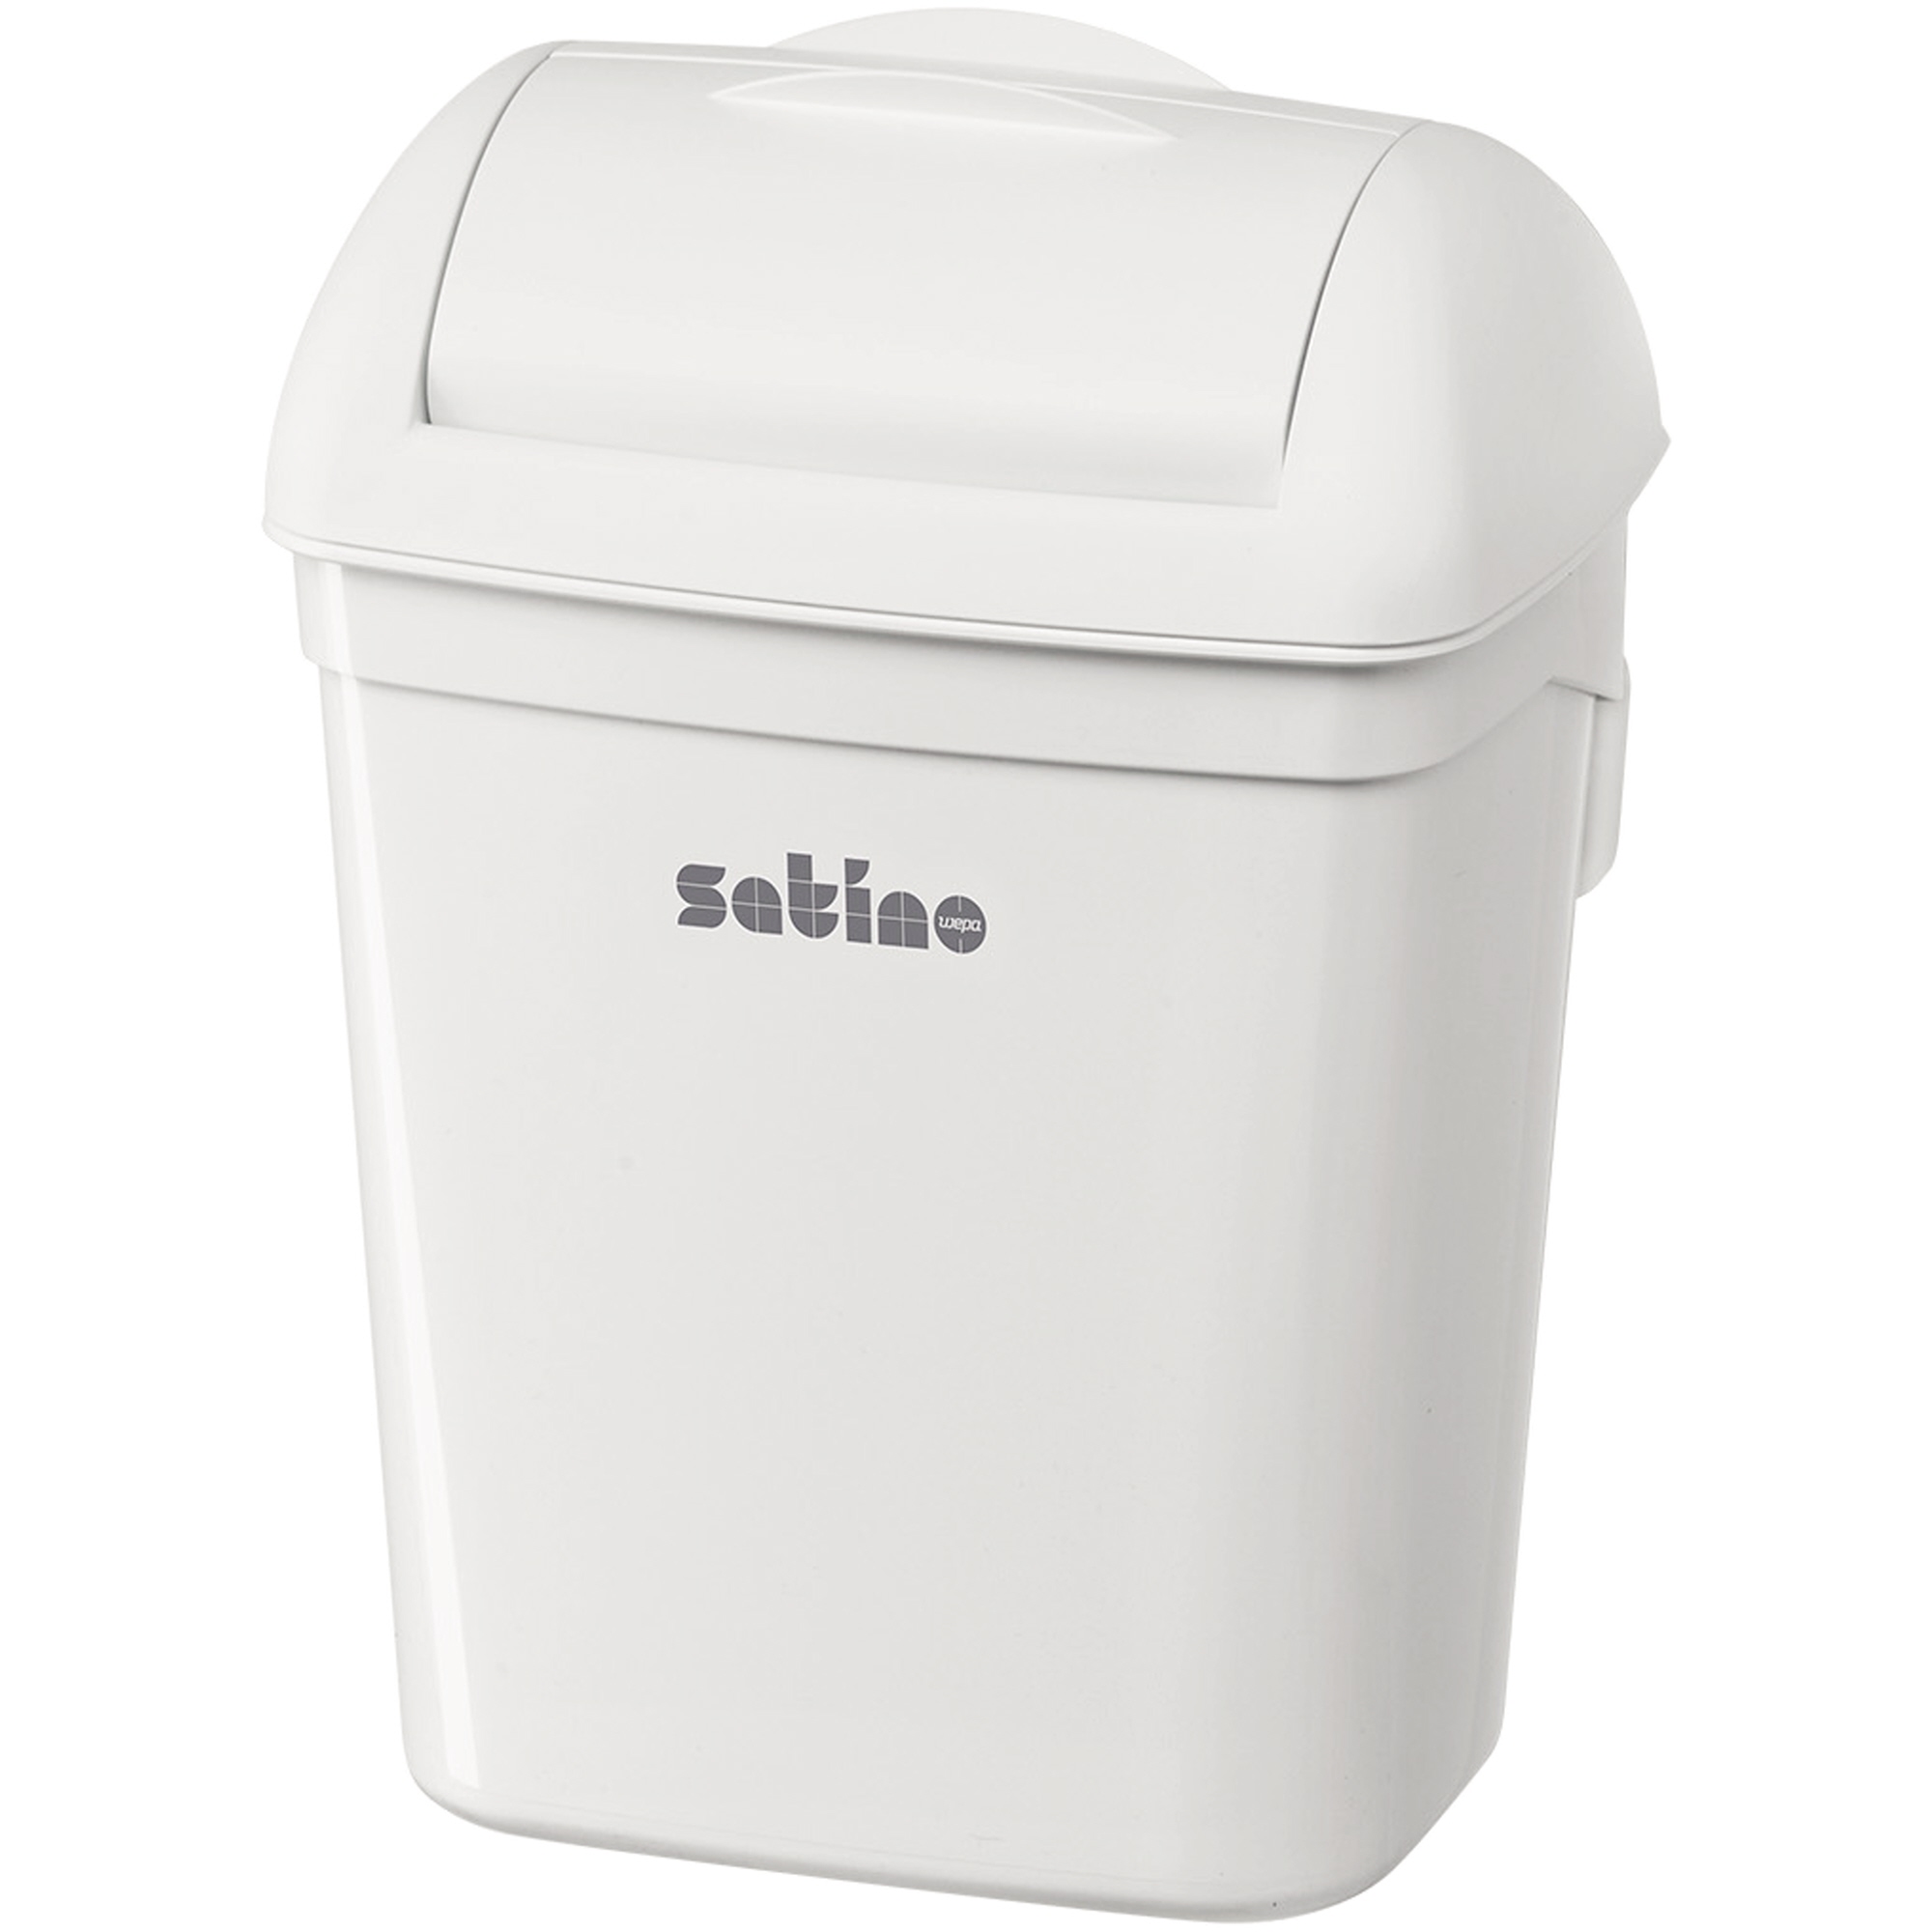 Satino Abfalleimer Hygiene mini 8 Liter weiß Deckelhaube